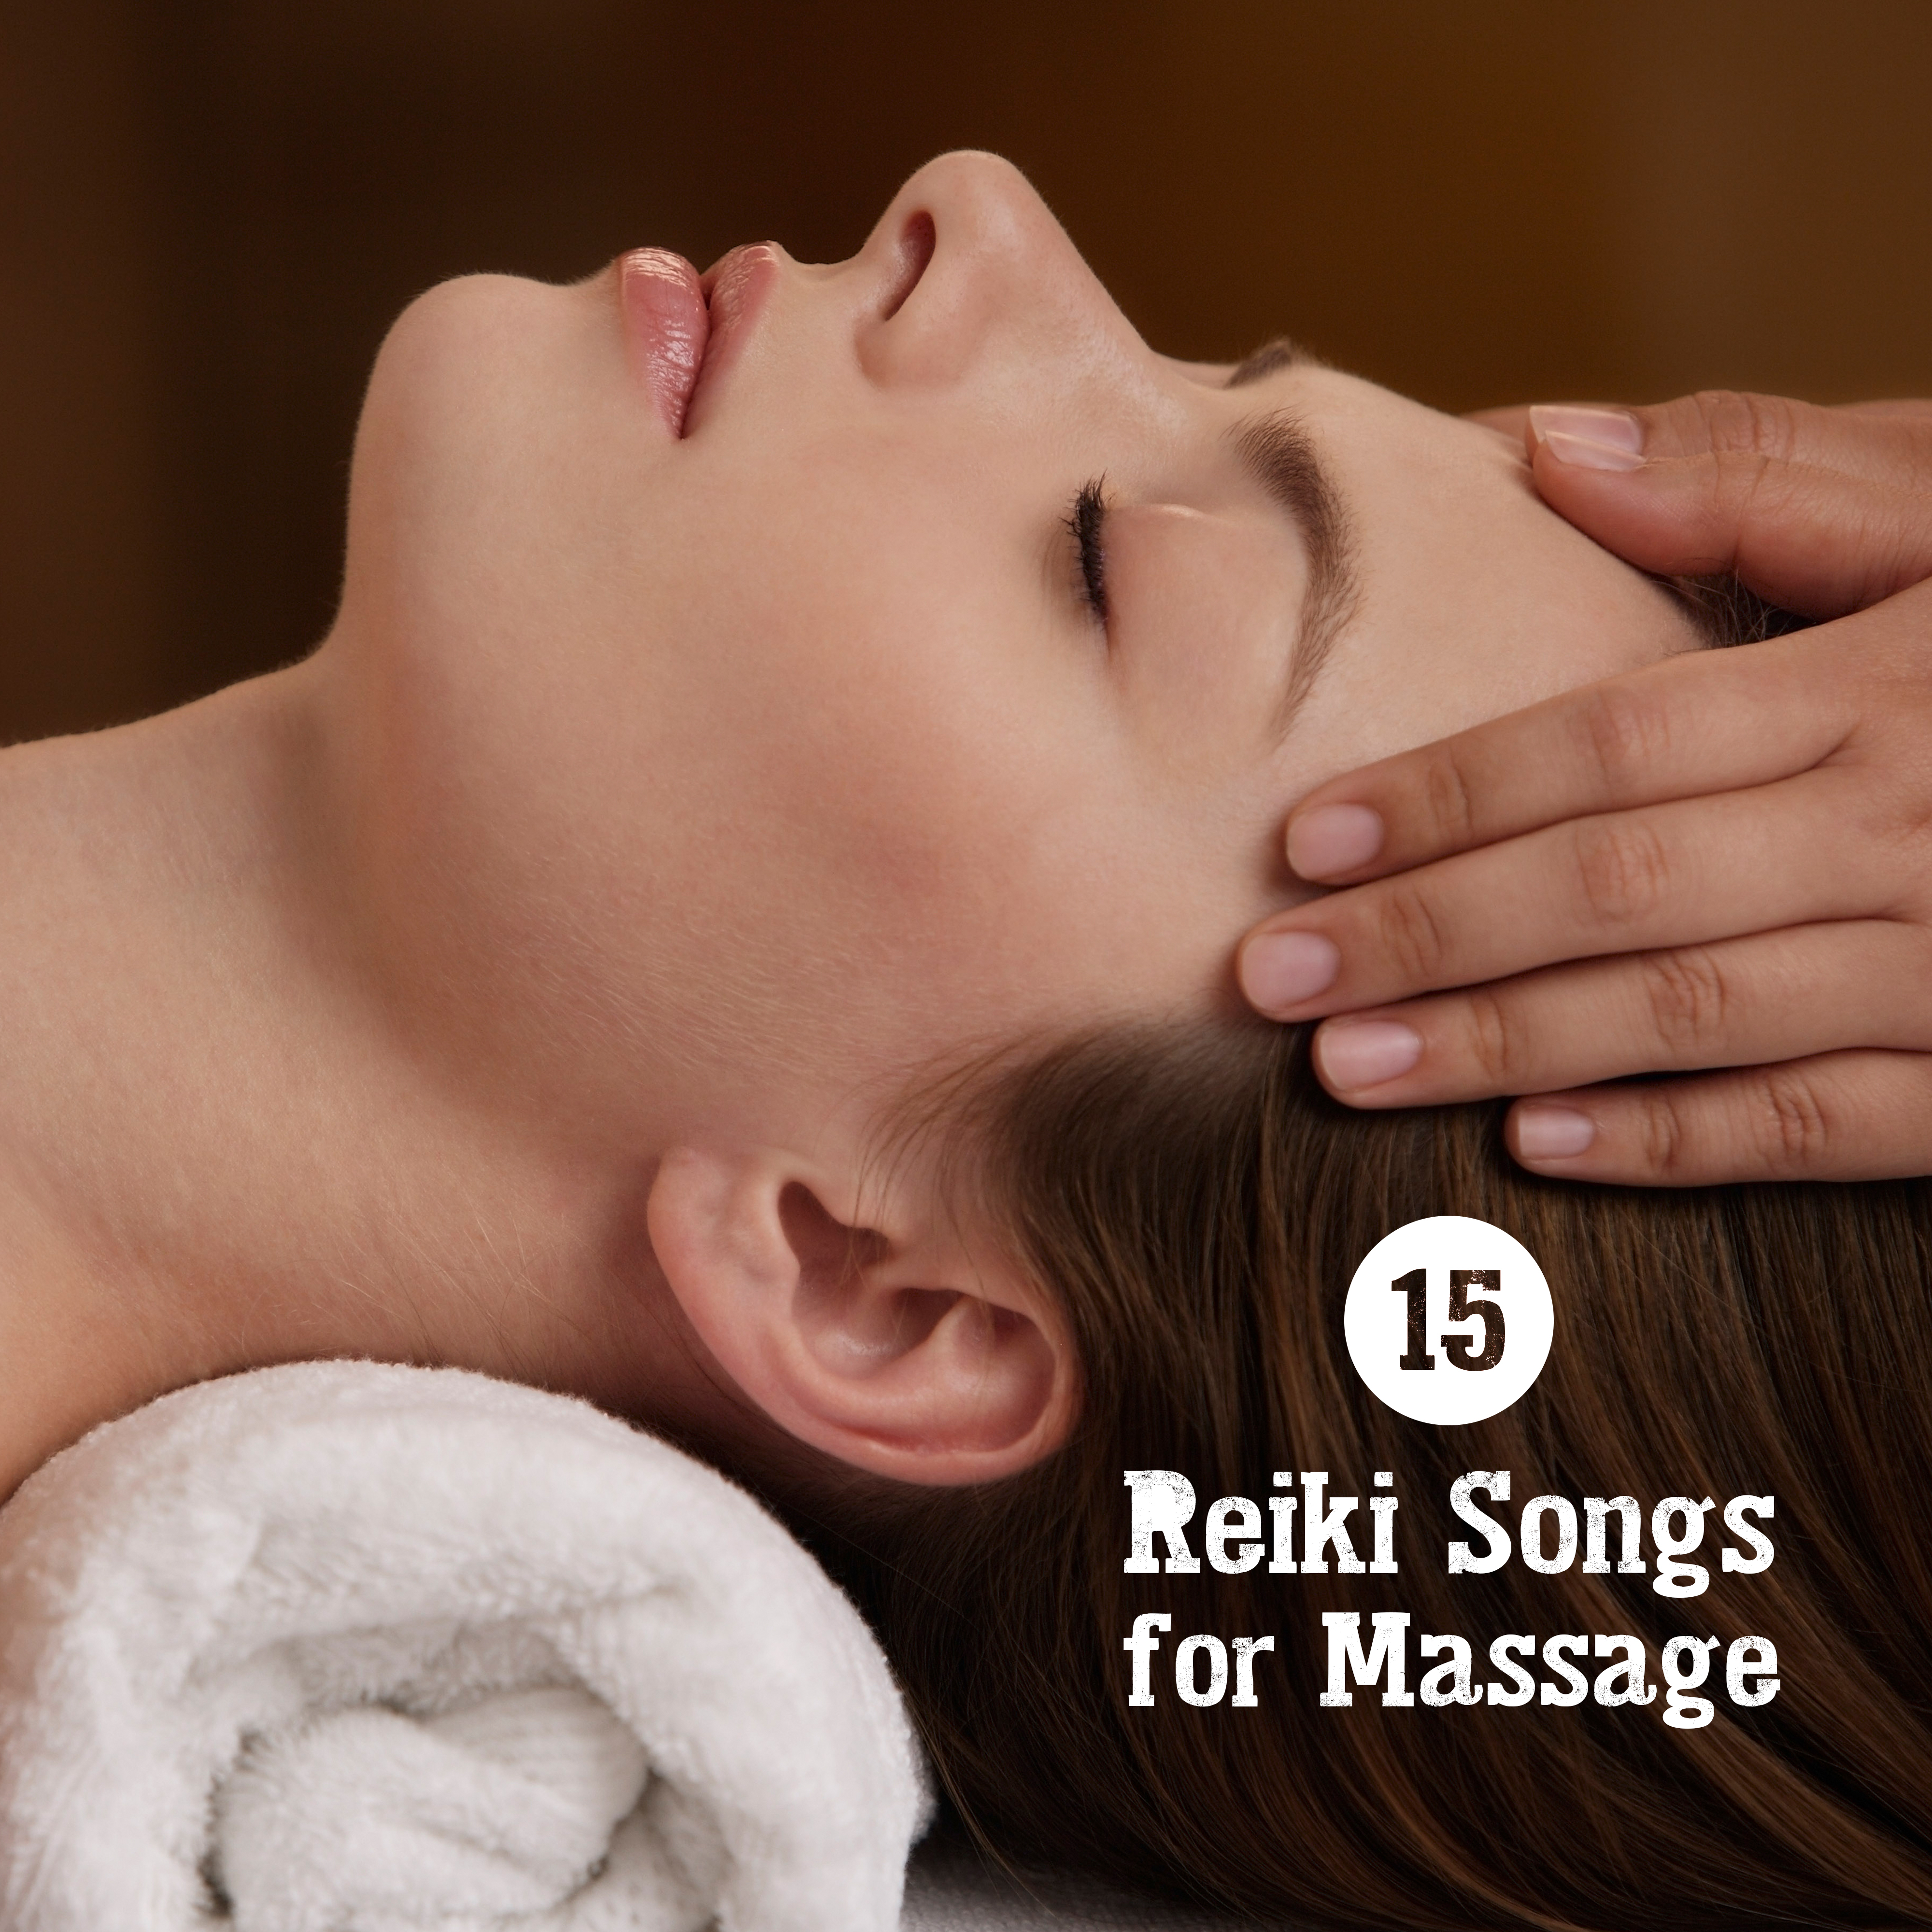 15 Reiki Songs for Massage